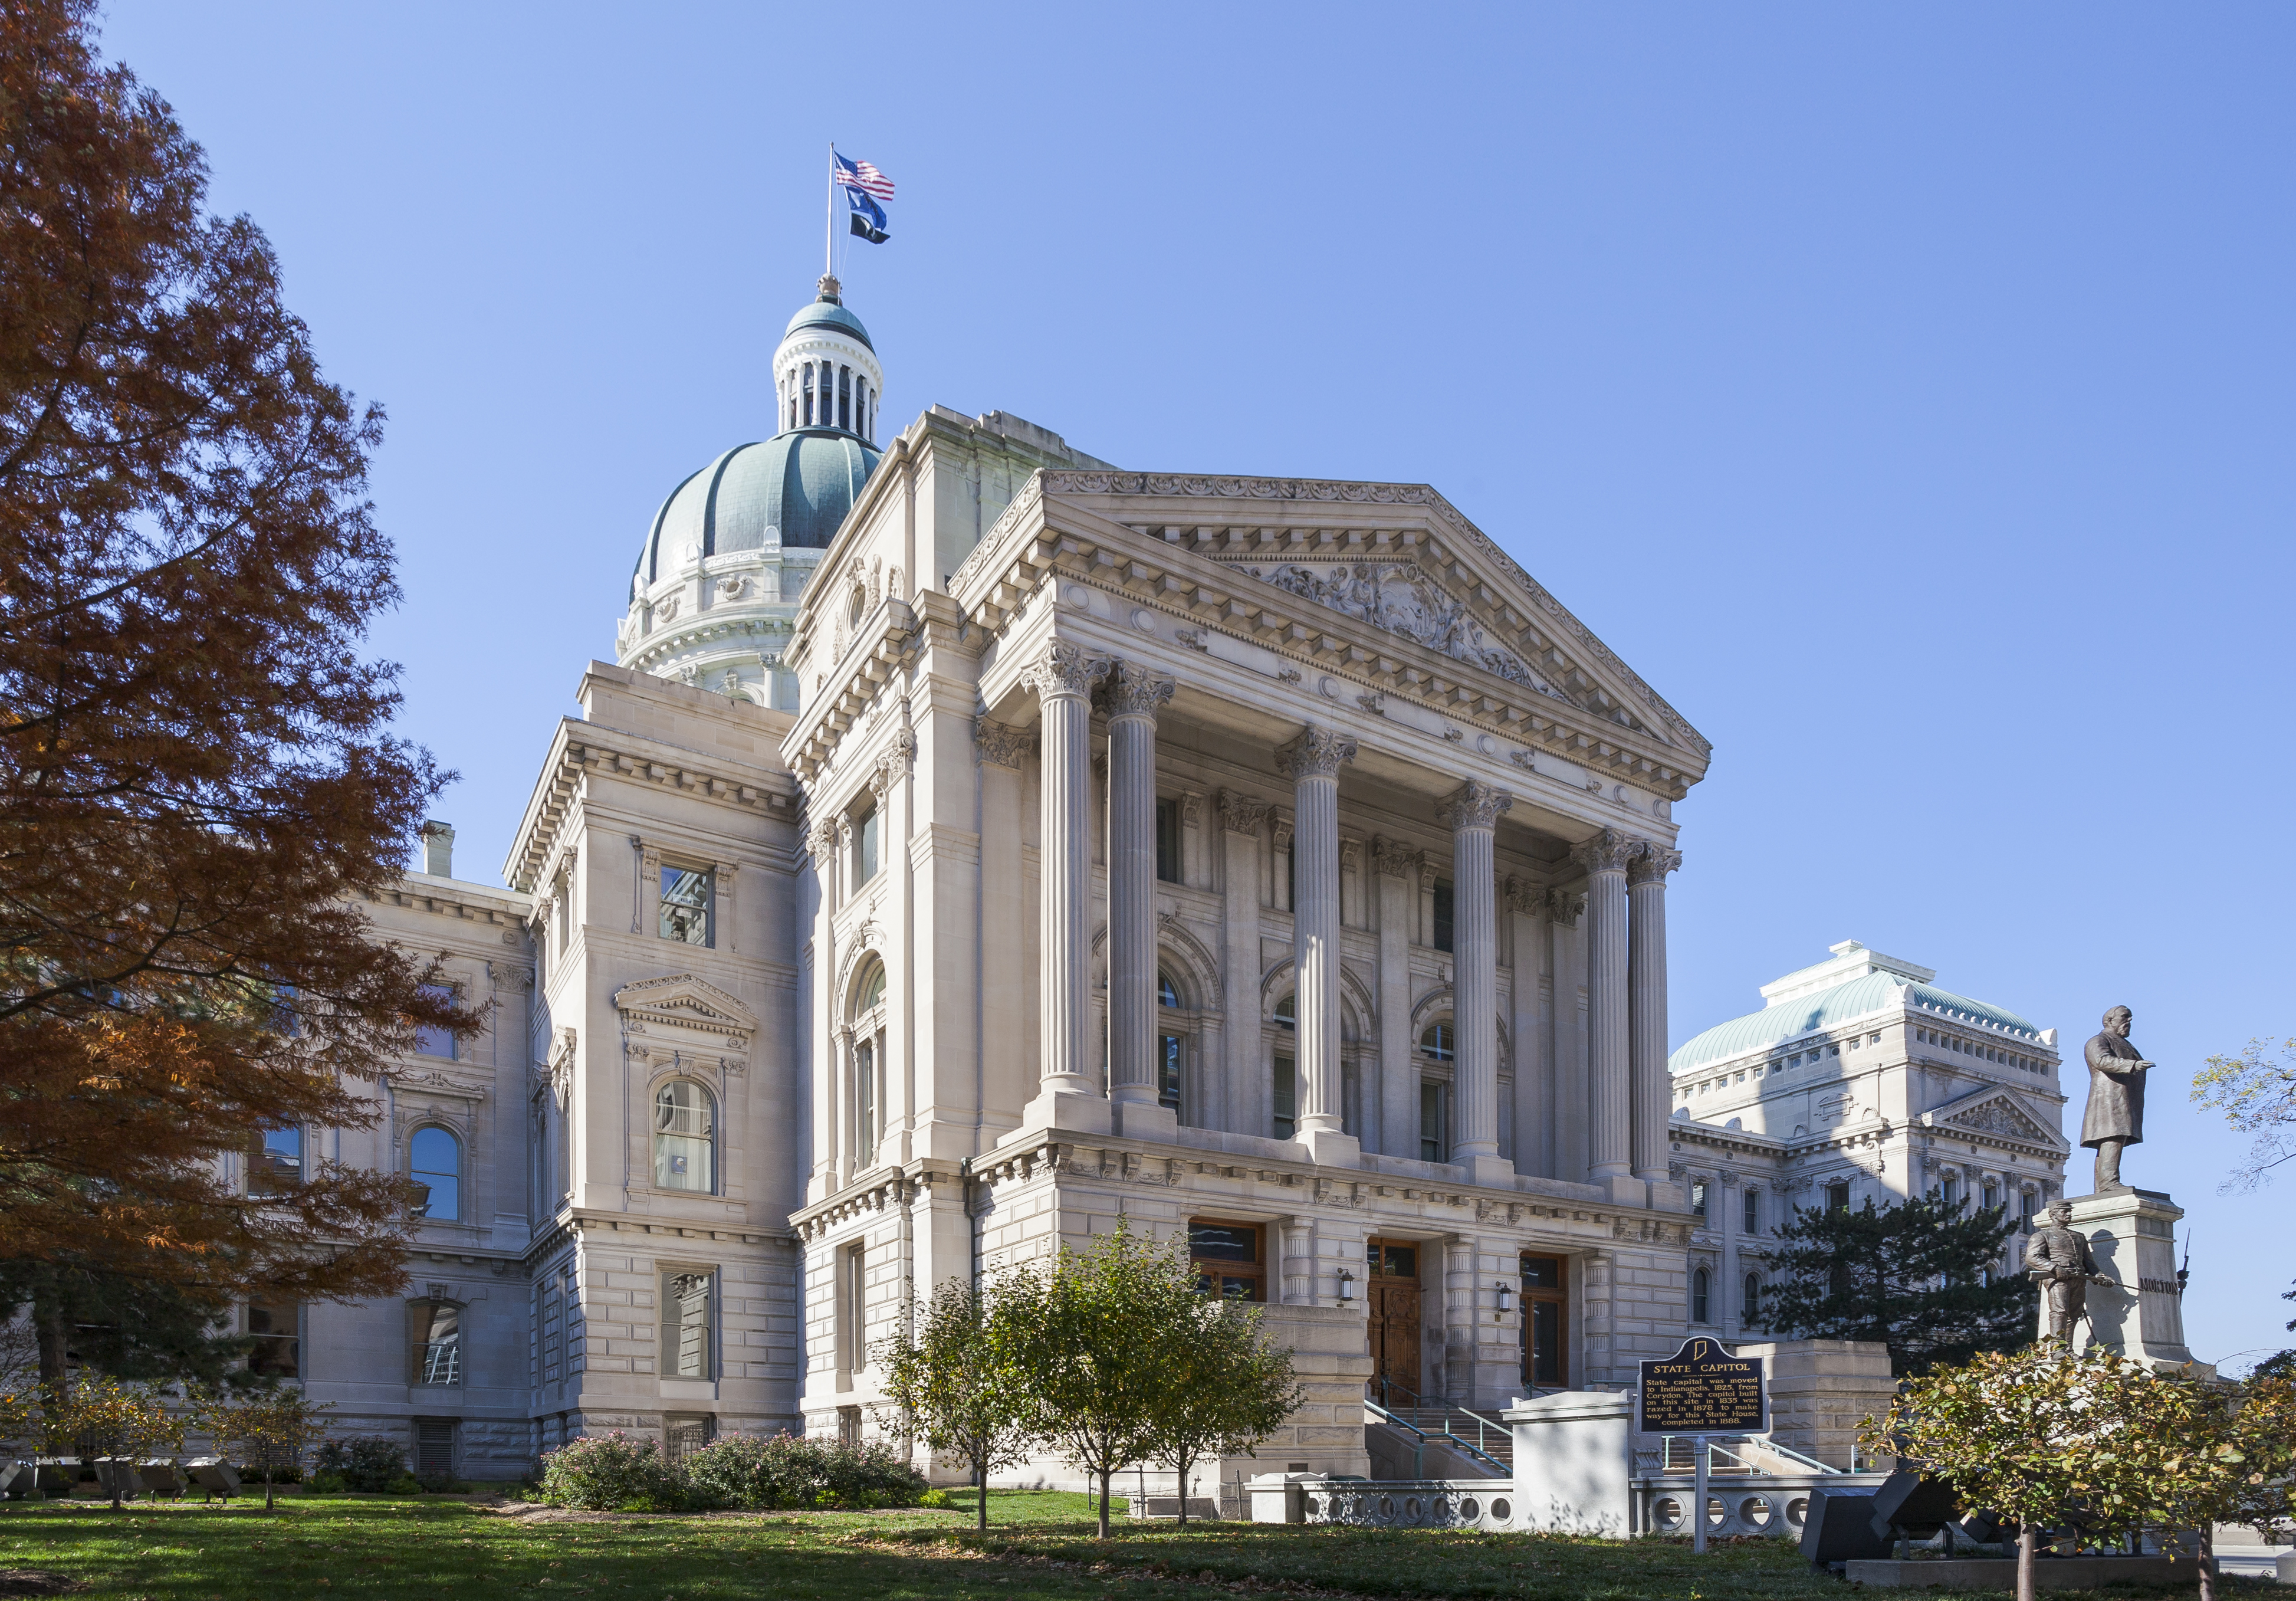 Capitol del Estado de Indiana, Indianápolis, Estados Unidos, 2012-10-22, DD 07